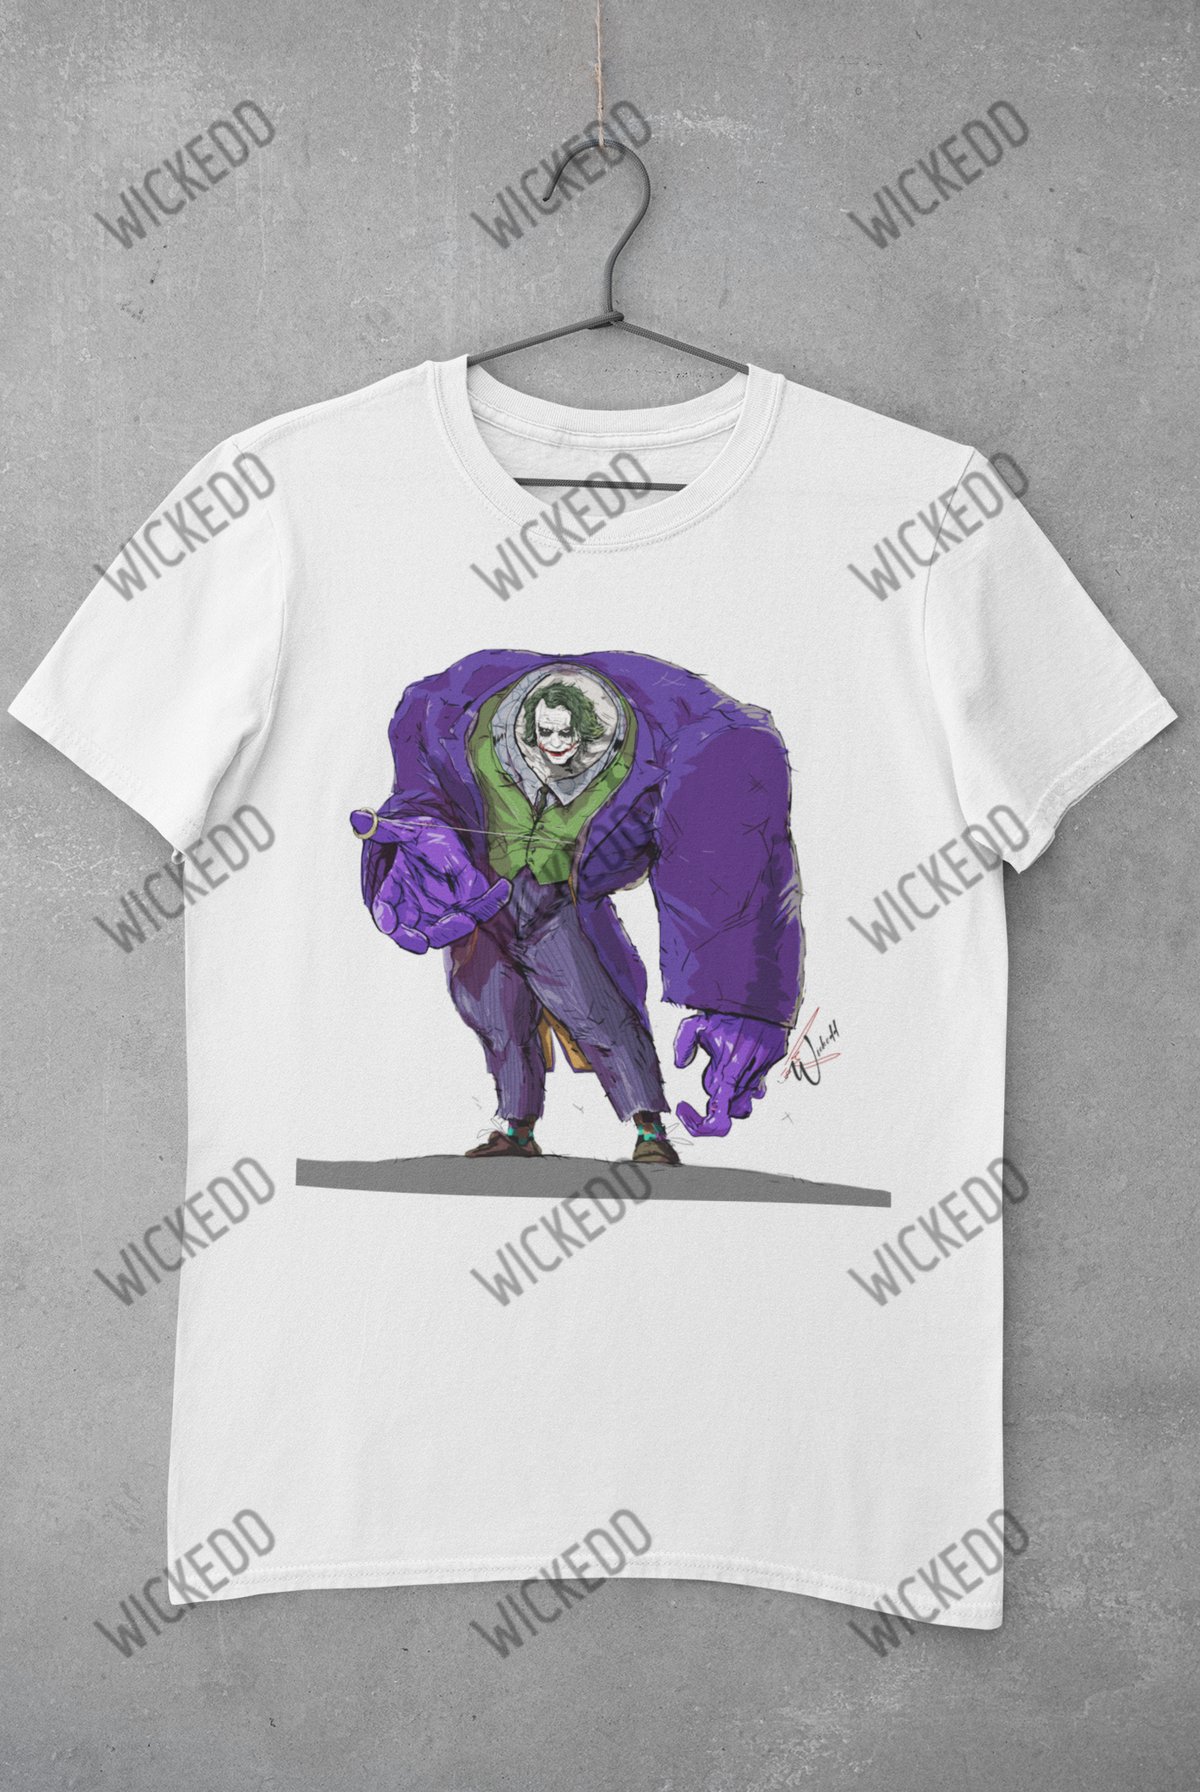 Joker (Heath)